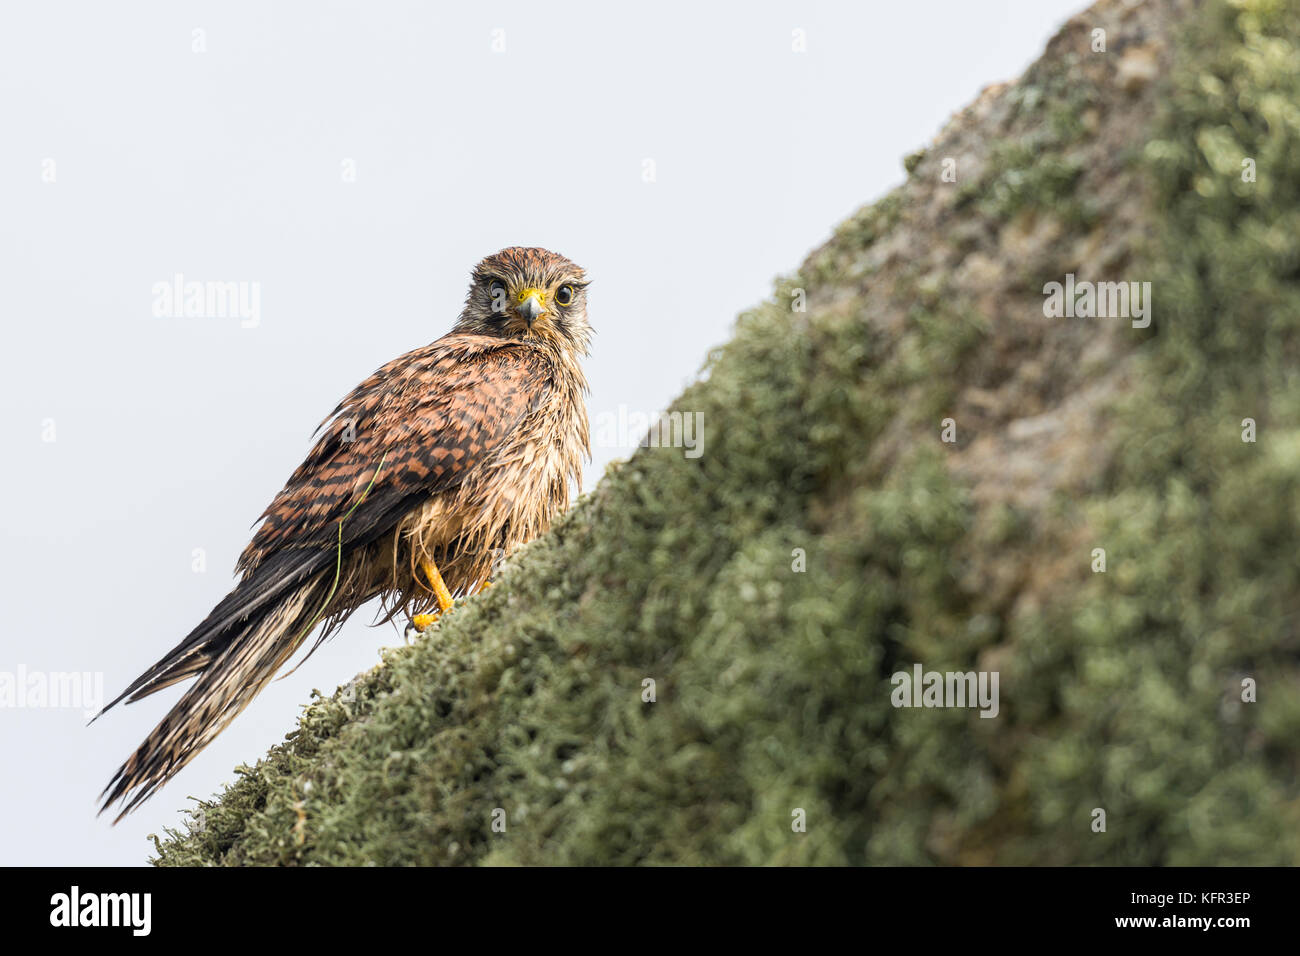 Crécerelle (Falco tinnunculus) perché sur un rocher, contact avec les yeux - Cornwall, uk Banque D'Images